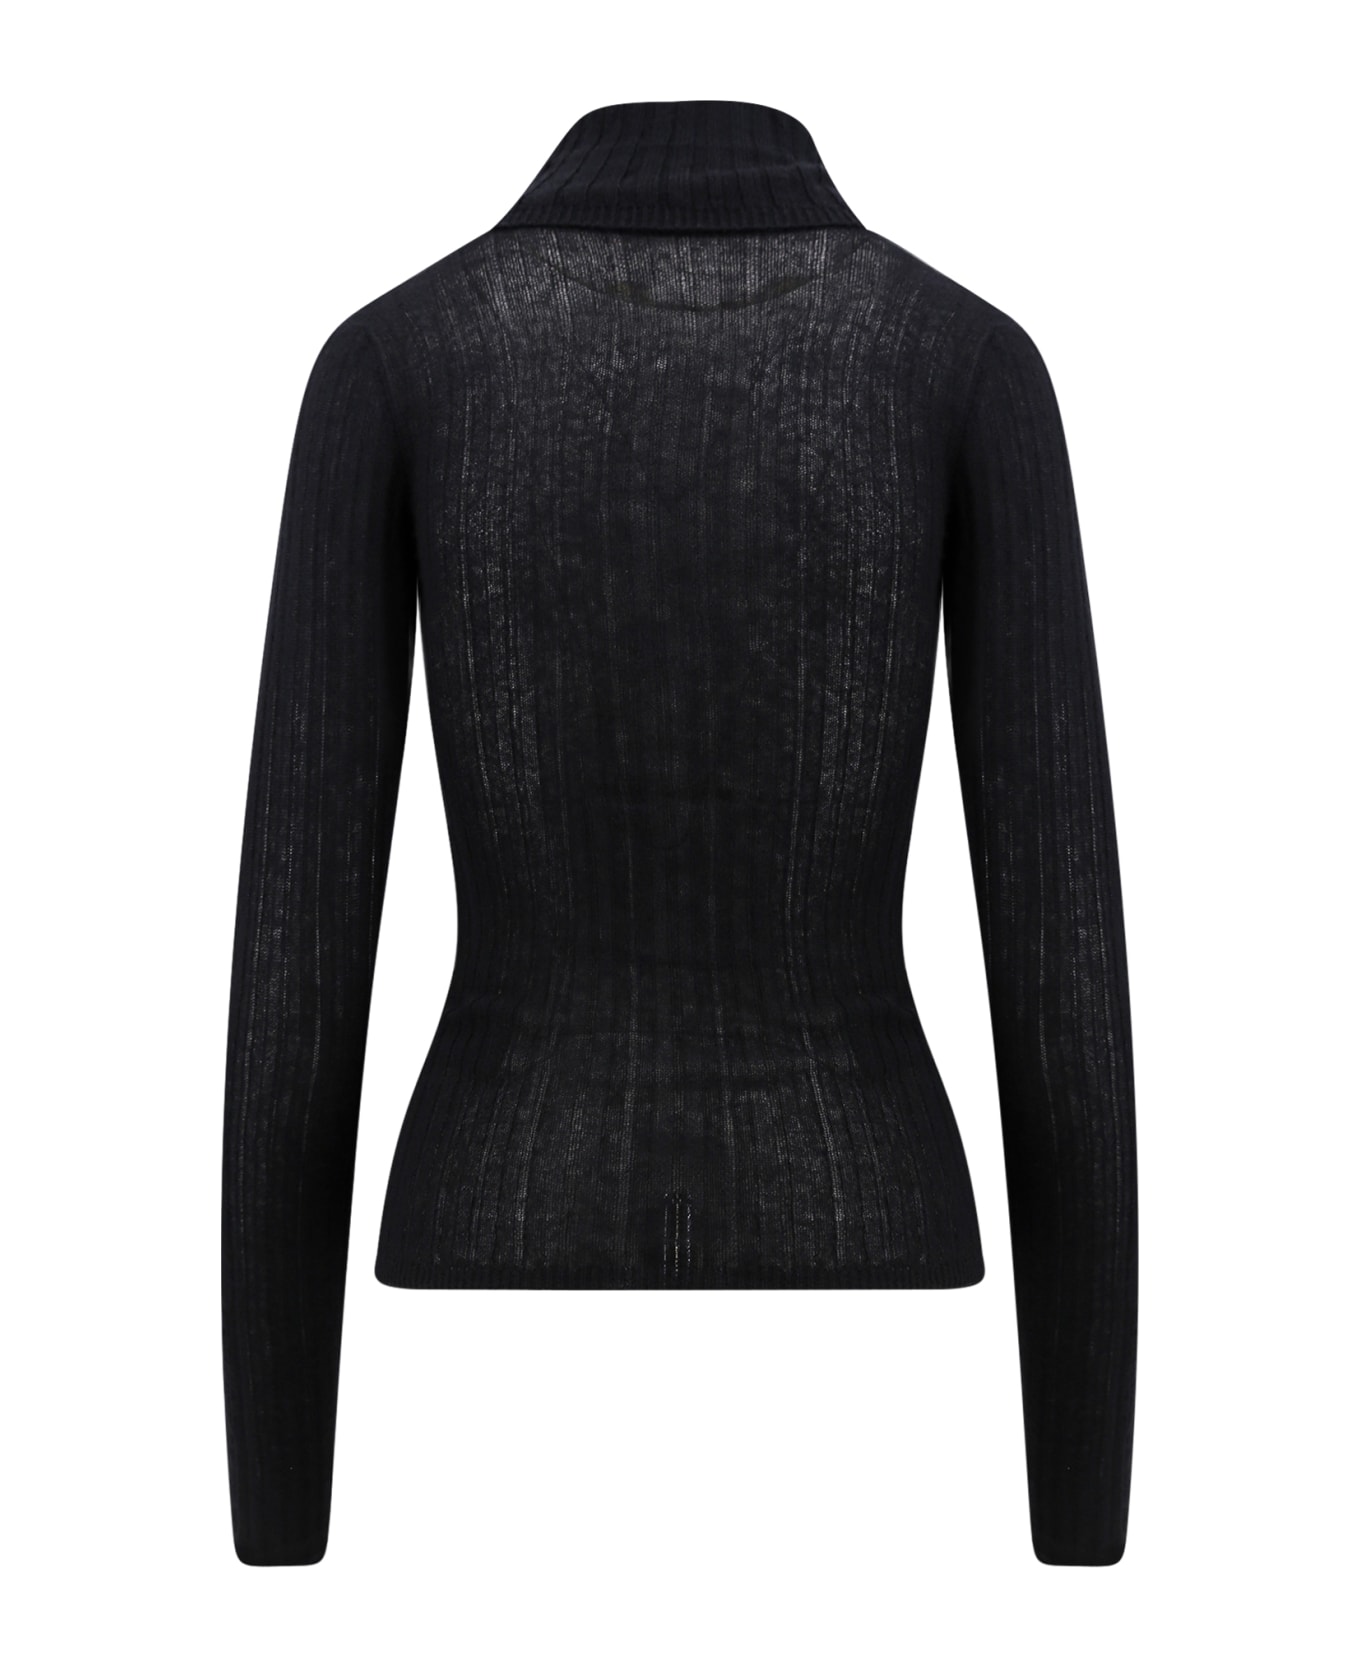 Durazzi Milano Sweater - Black